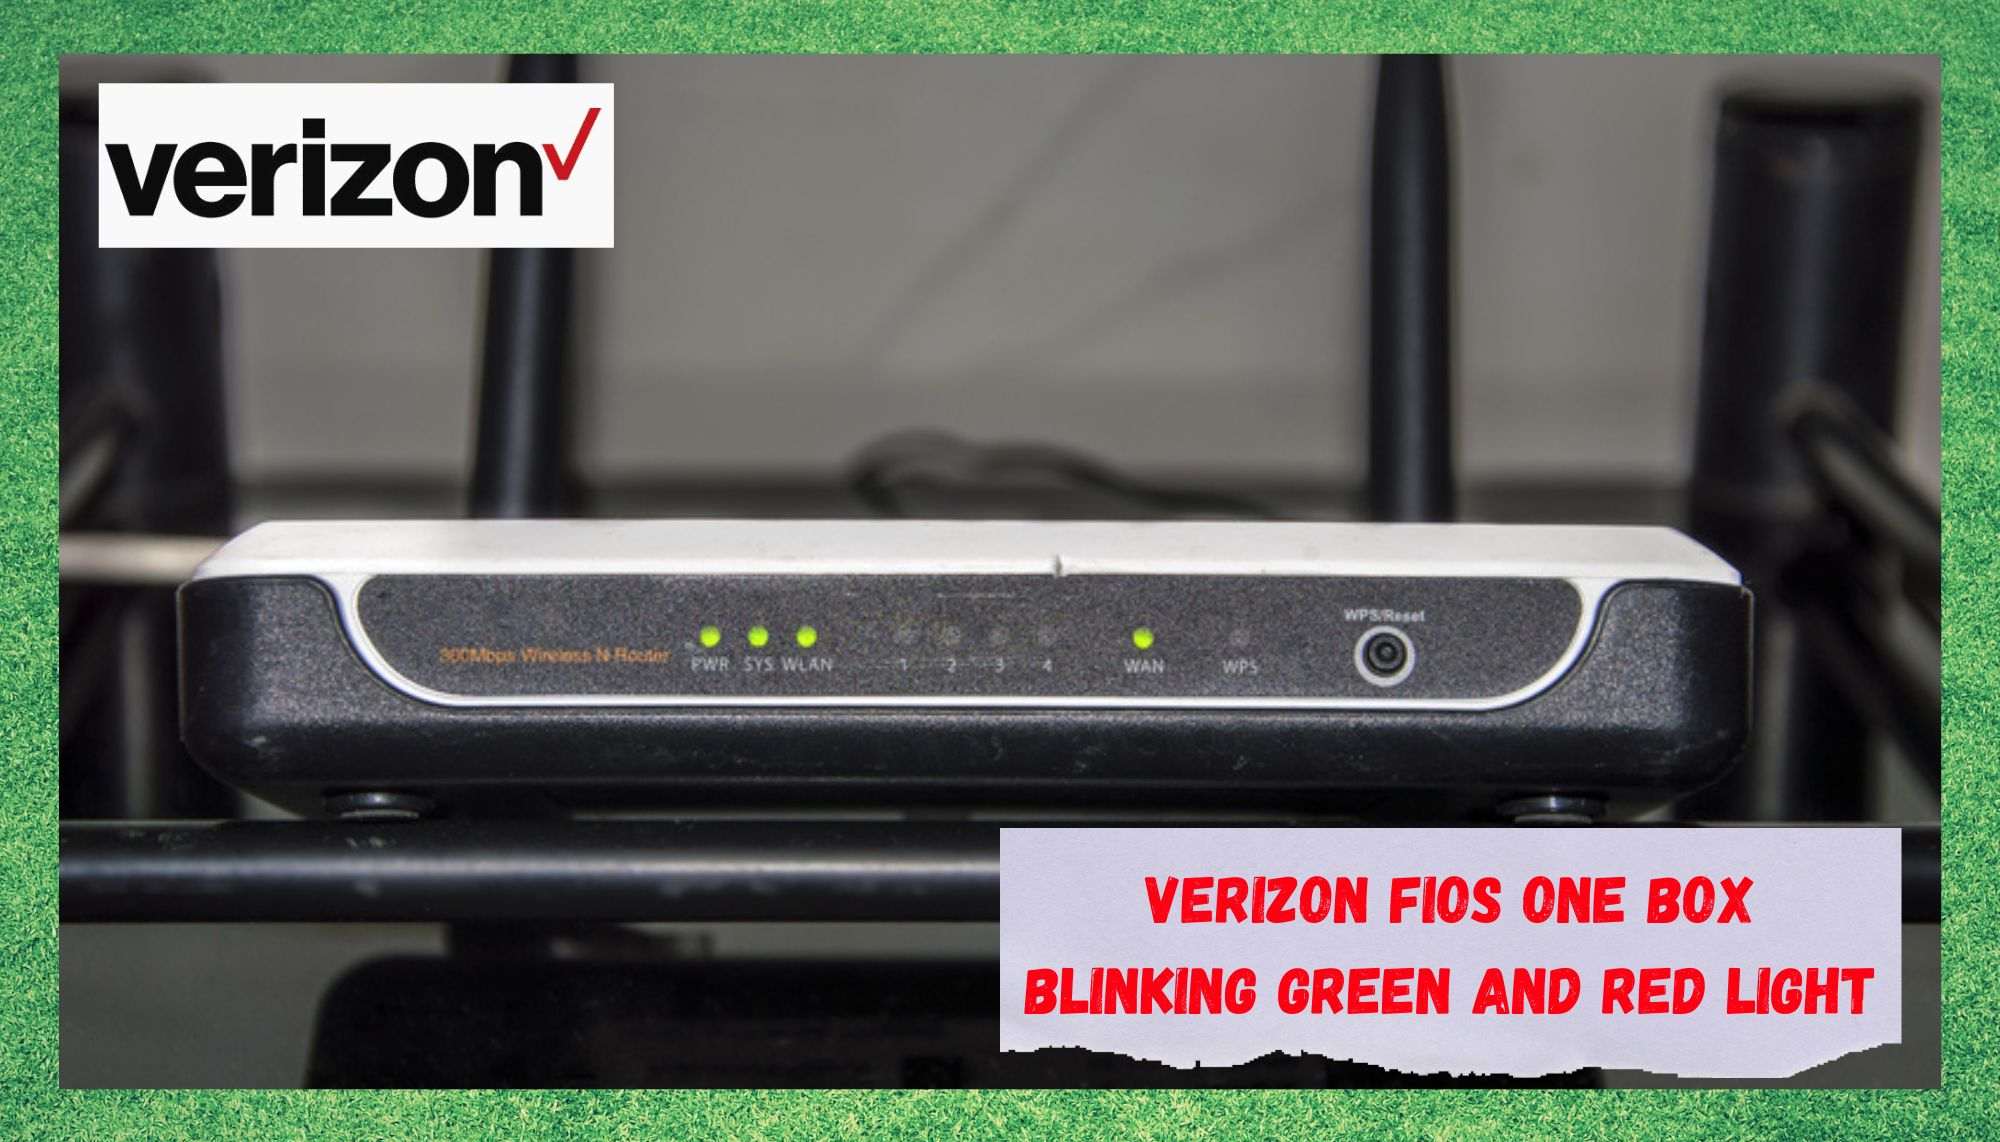 2 कारणहरू किन Verizon FiOS वन बक्स हरियो र रातो बत्ती चम्किरहेको छ